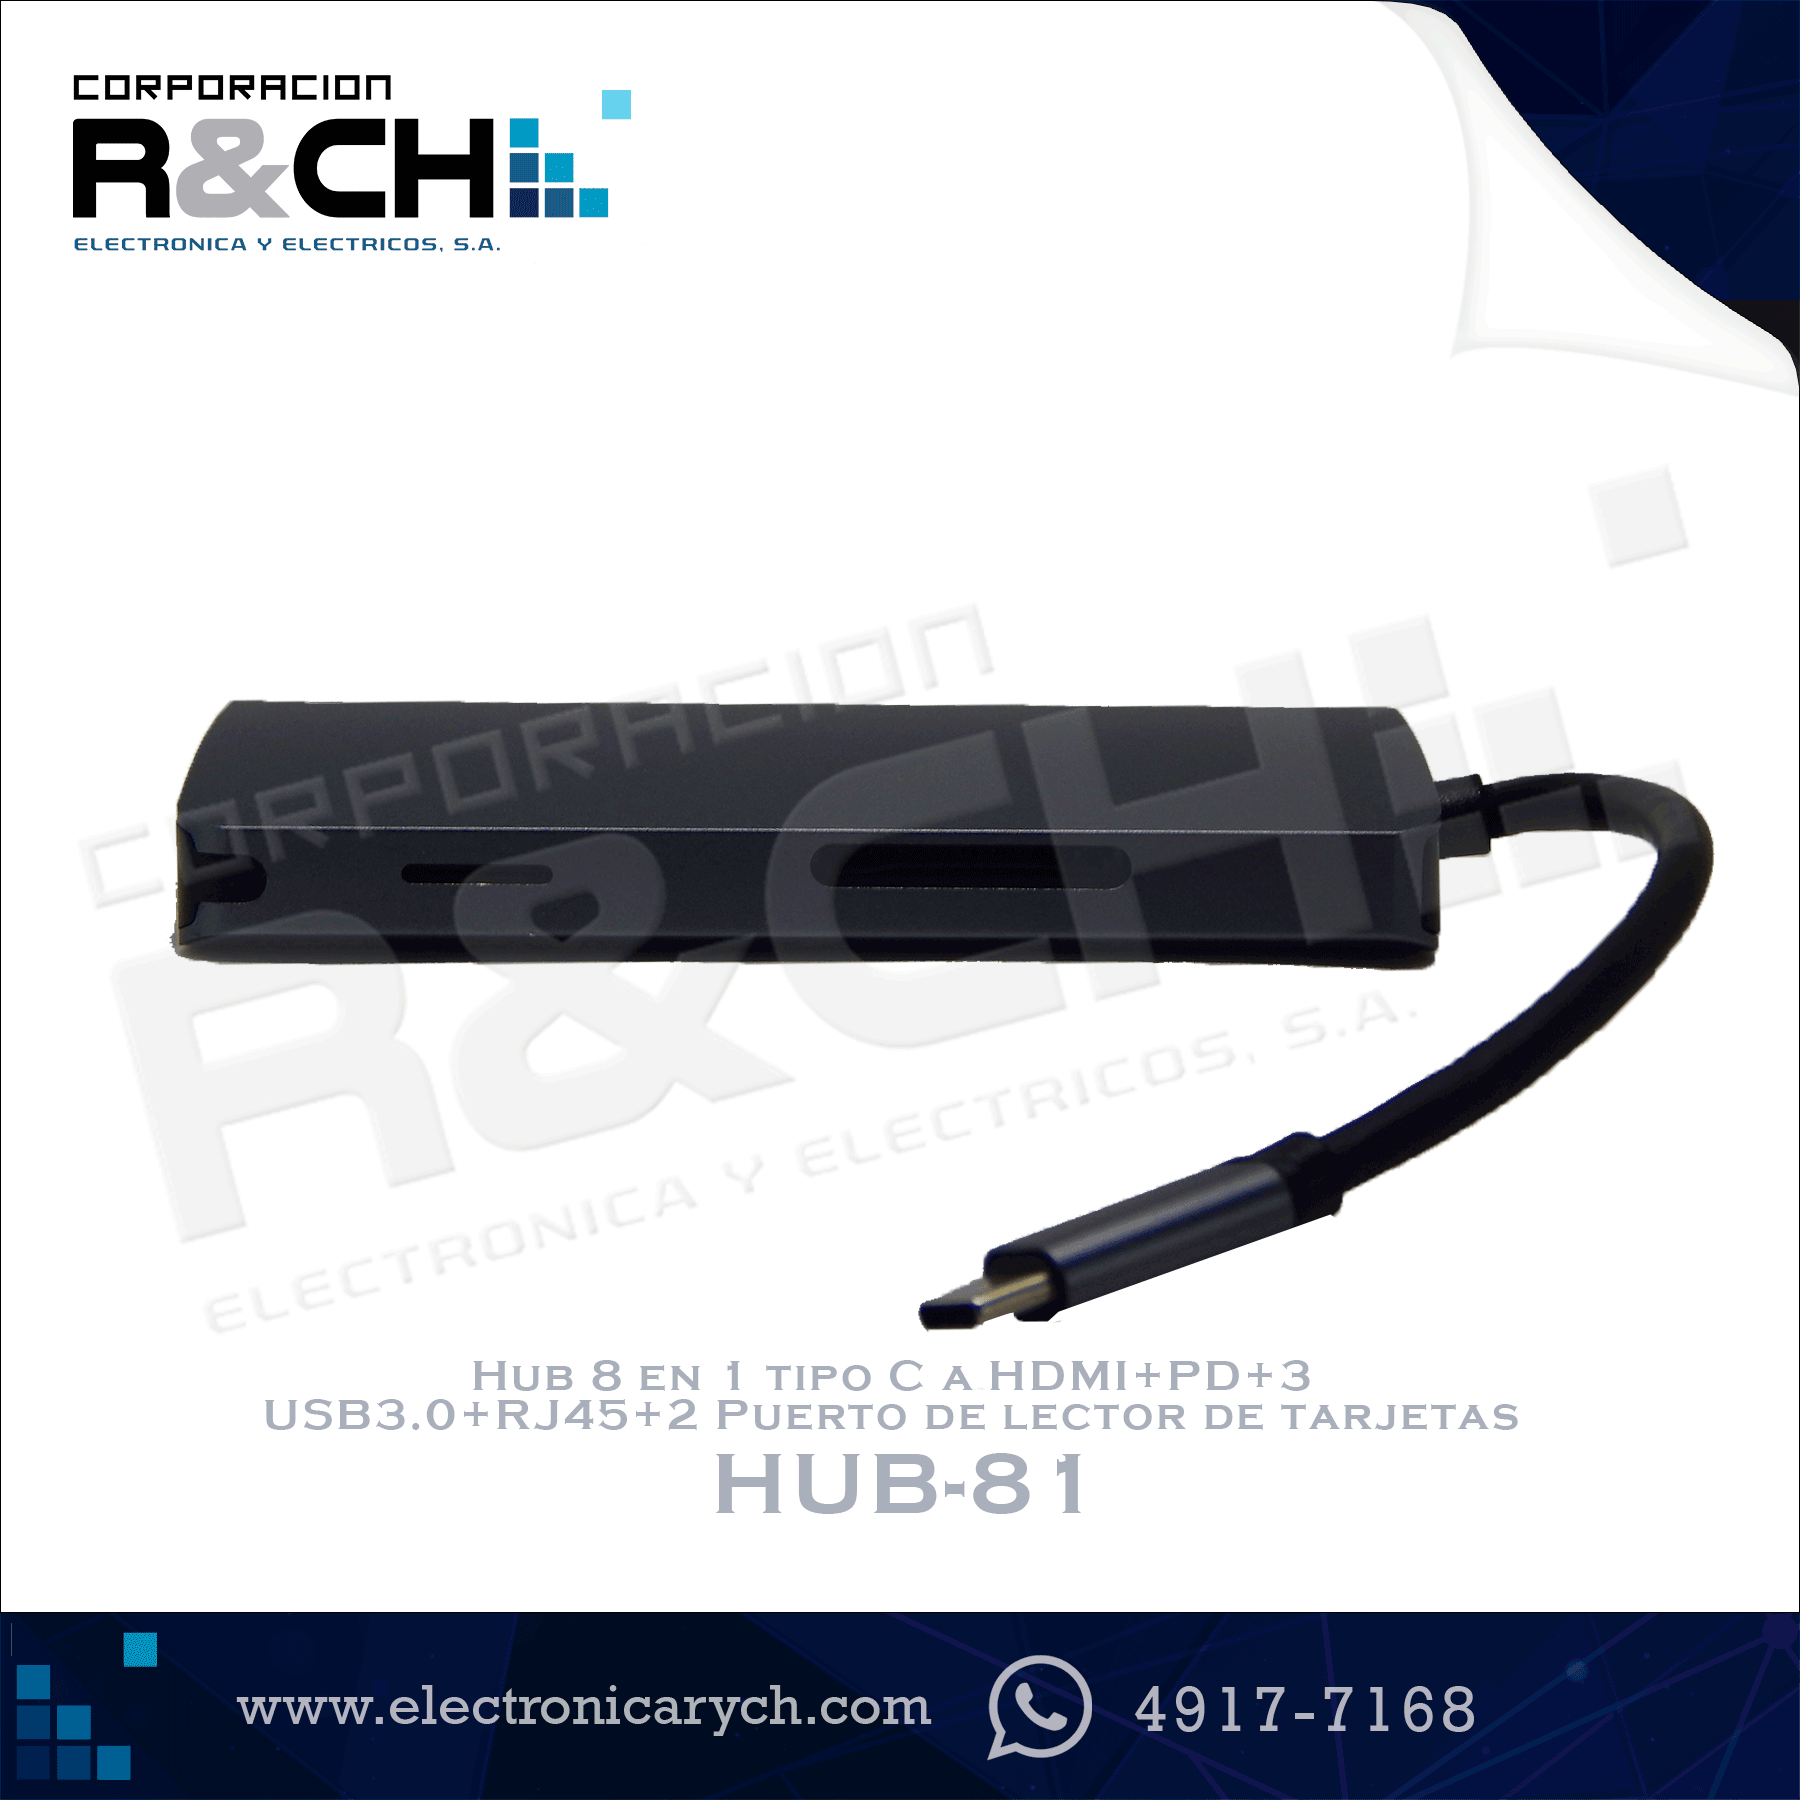 HUB-81 Hub 8 en 1 tipo C a HDMI+PD+3  USB3.0+RJ45+2 Puerto de lector de tarjetas